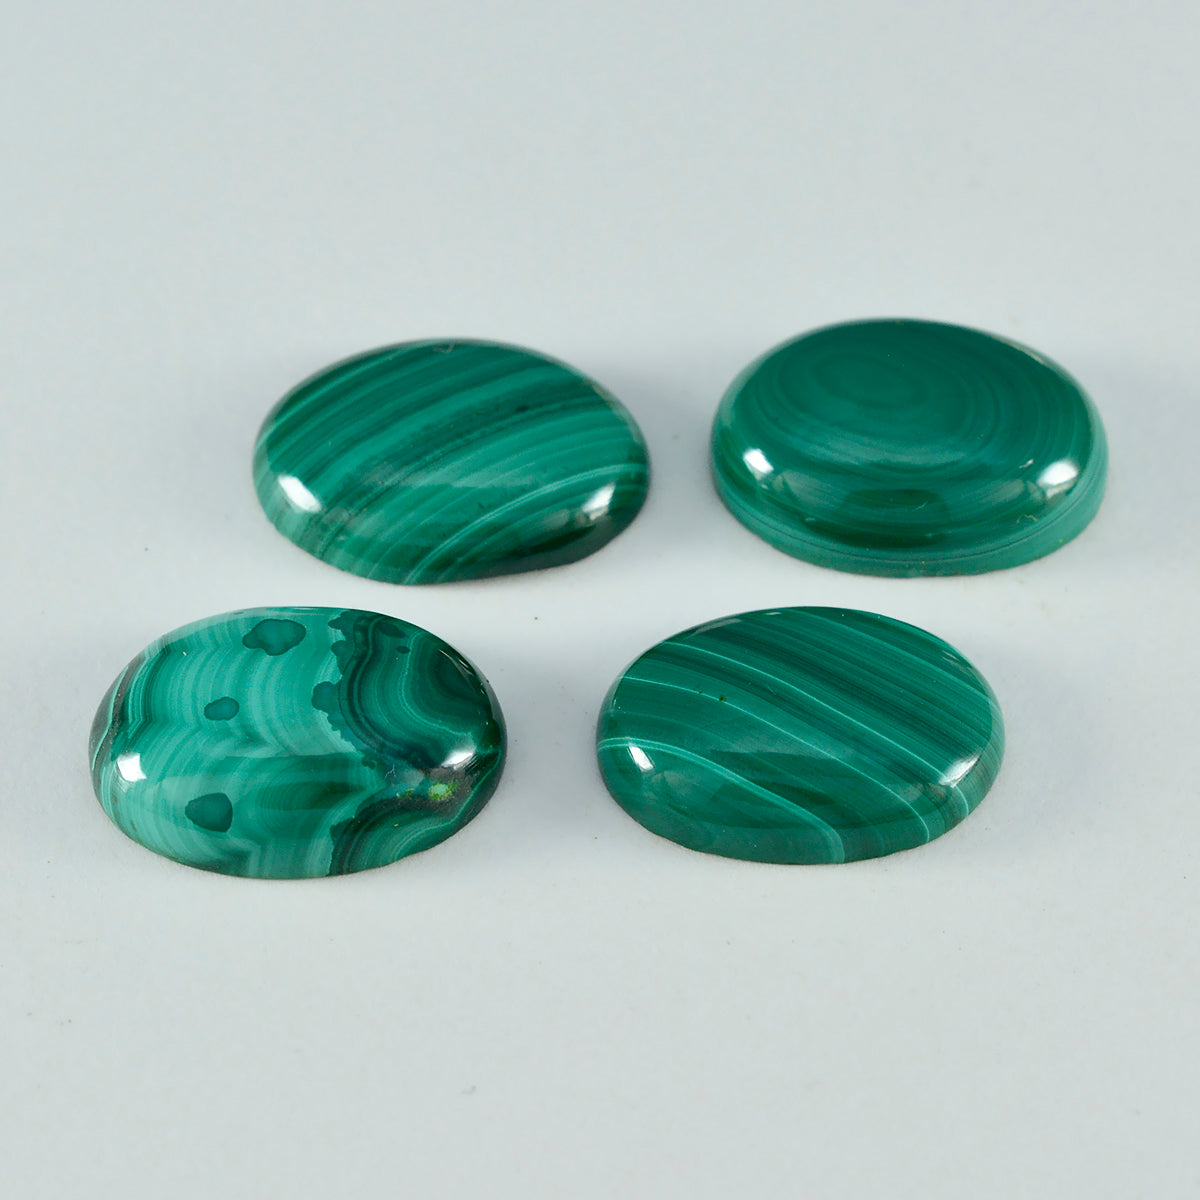 riyogems 1 pieza cabujón de malaquita verde 10x12 mm forma ovalada una piedra suelta de calidad